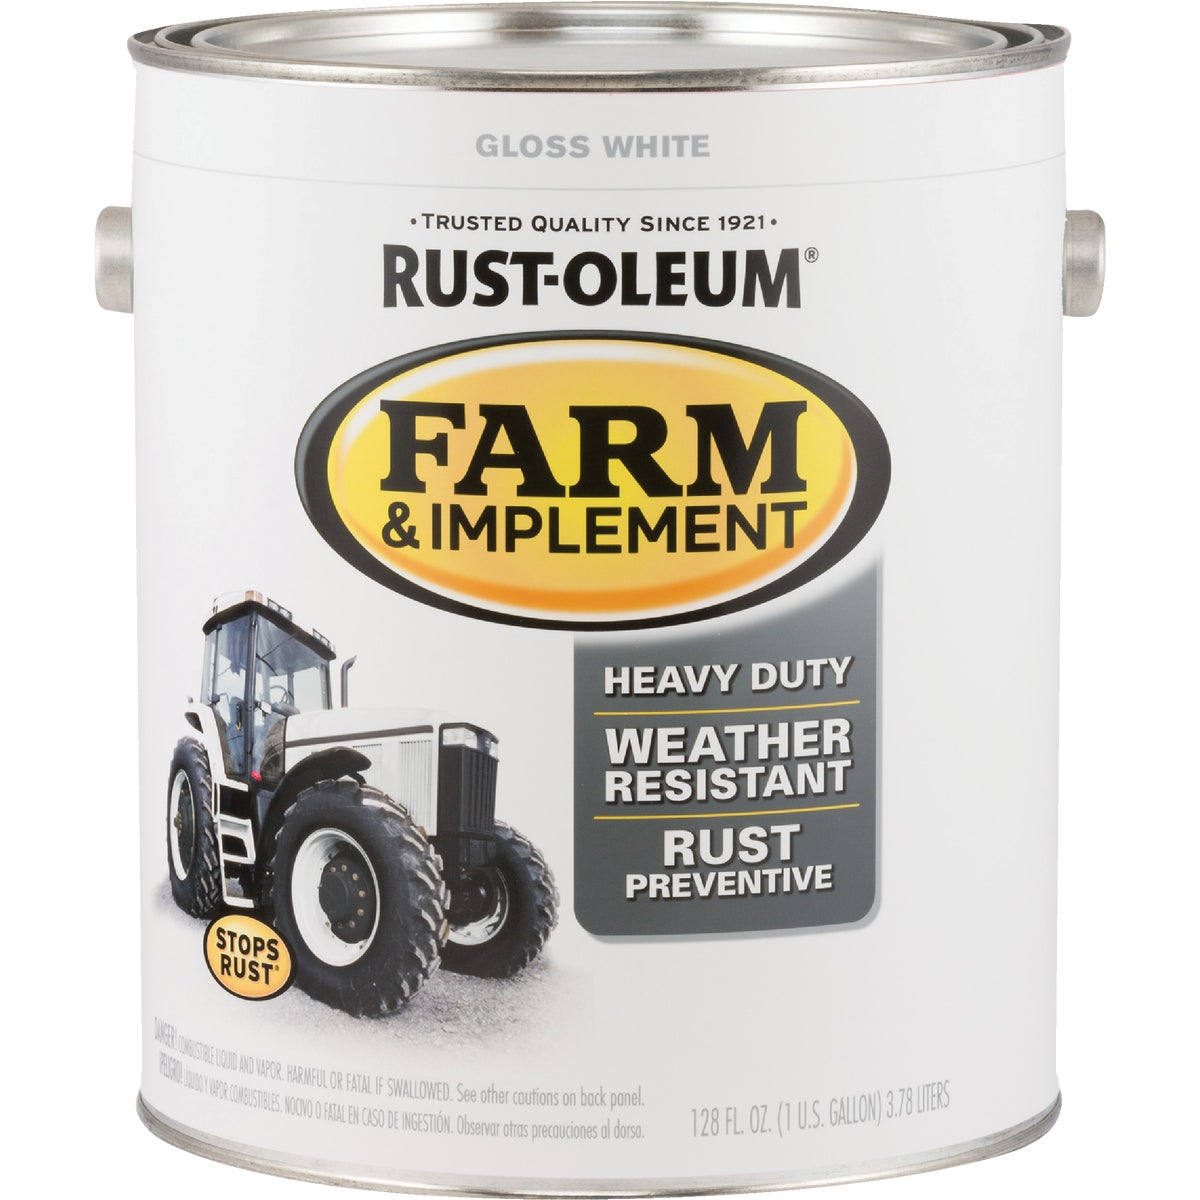 Rust-Oleum 1 Gallon White Gloss Farm & Implement Enamel